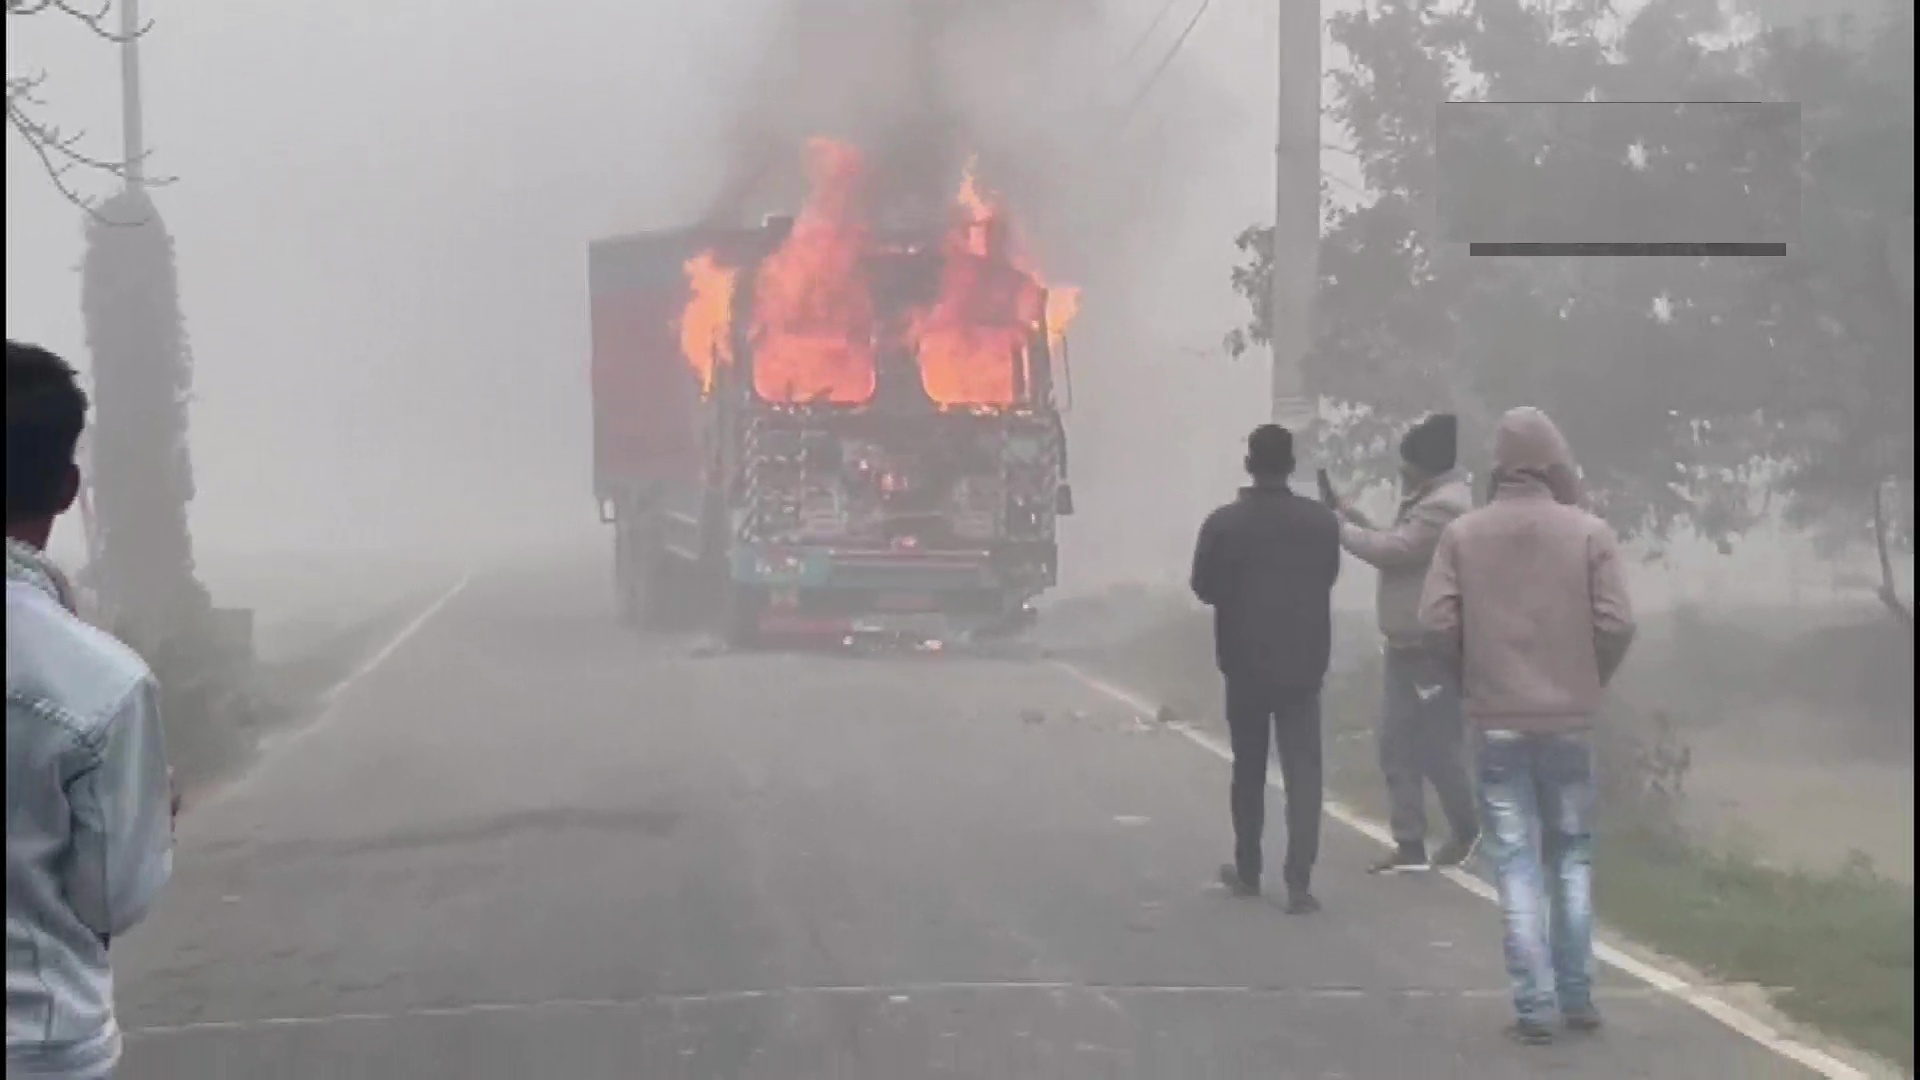 Bihar: People block highway after truck mowed down class 10 student